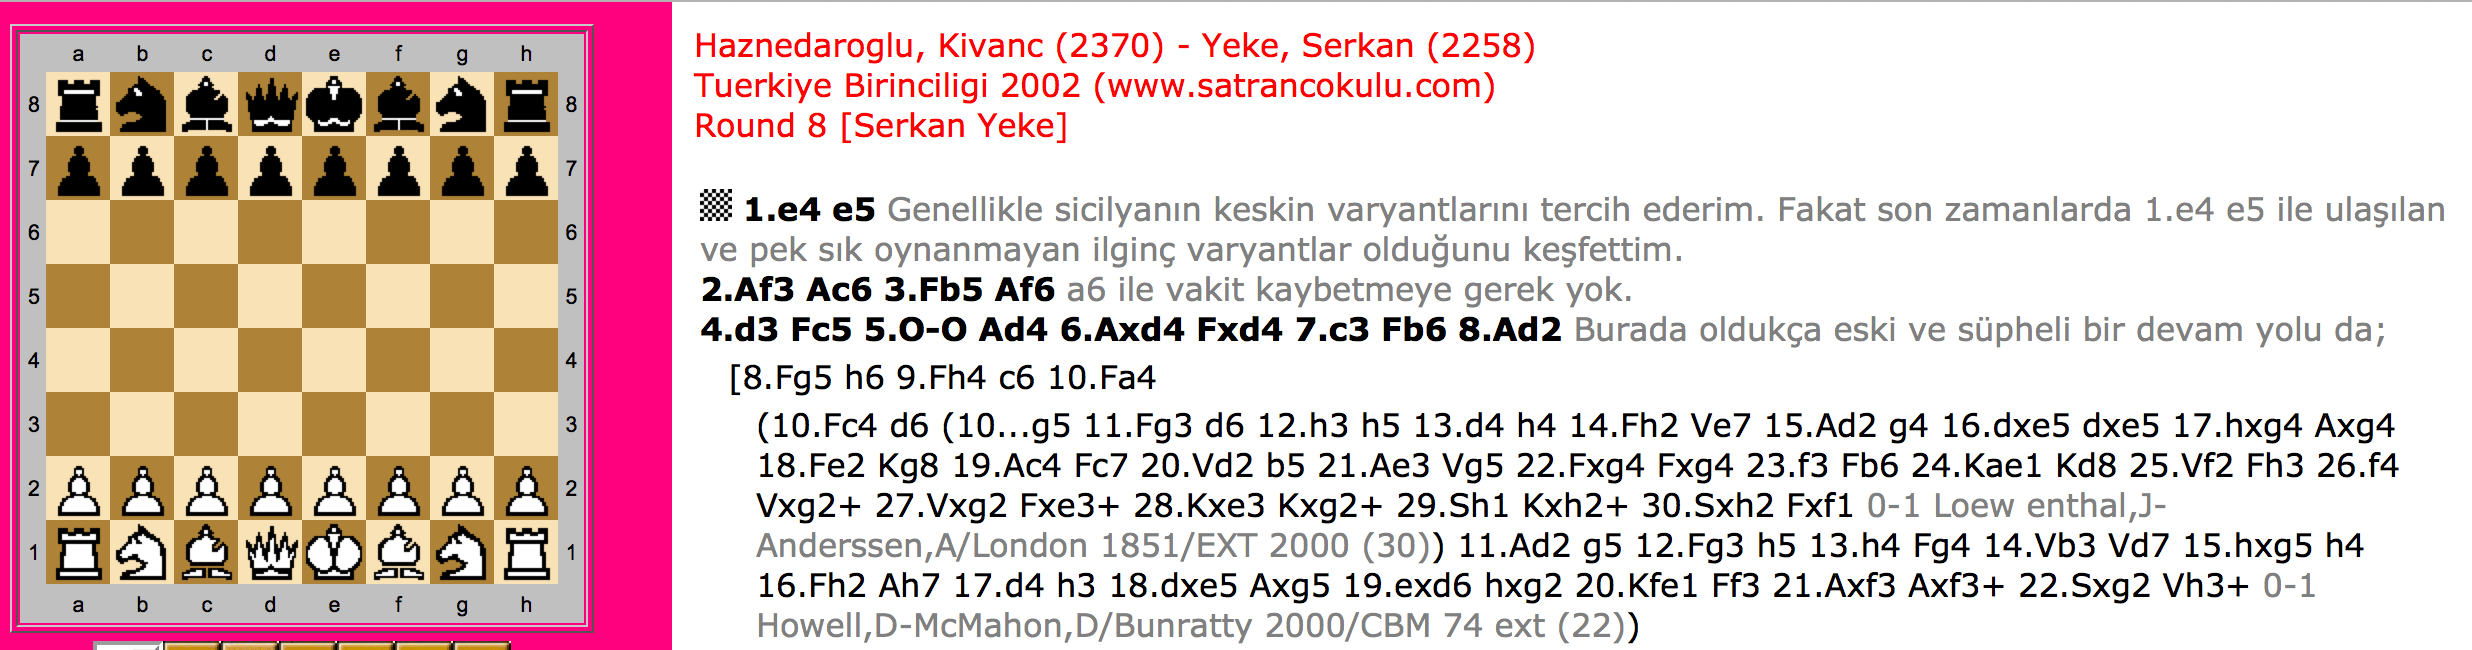 Haznedaroğlu – Yeke